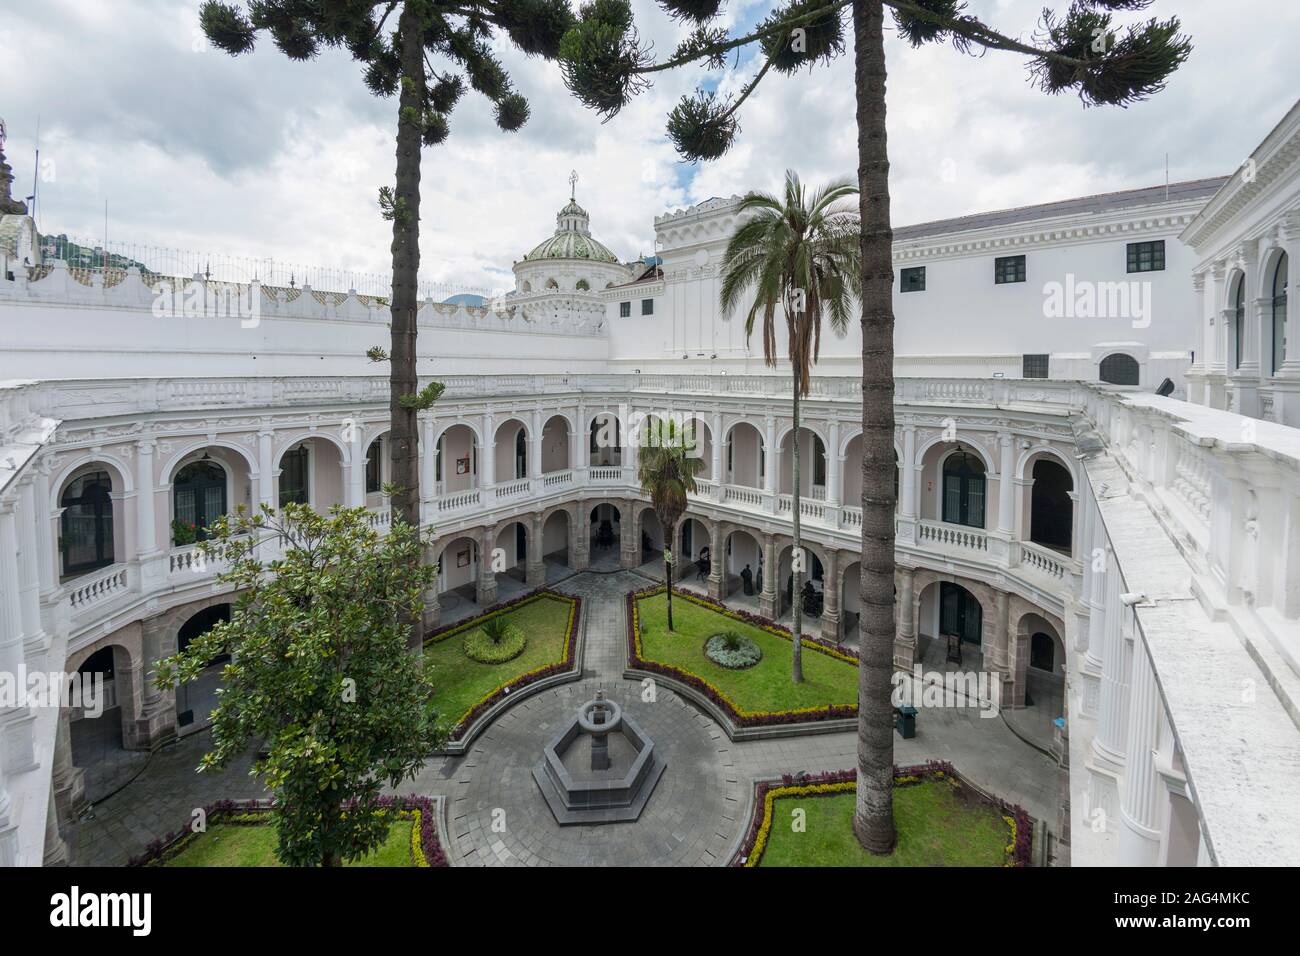 Cortile del palazzo Arzobispal di Quito, capitale dell'Ecuador. Foto Stock